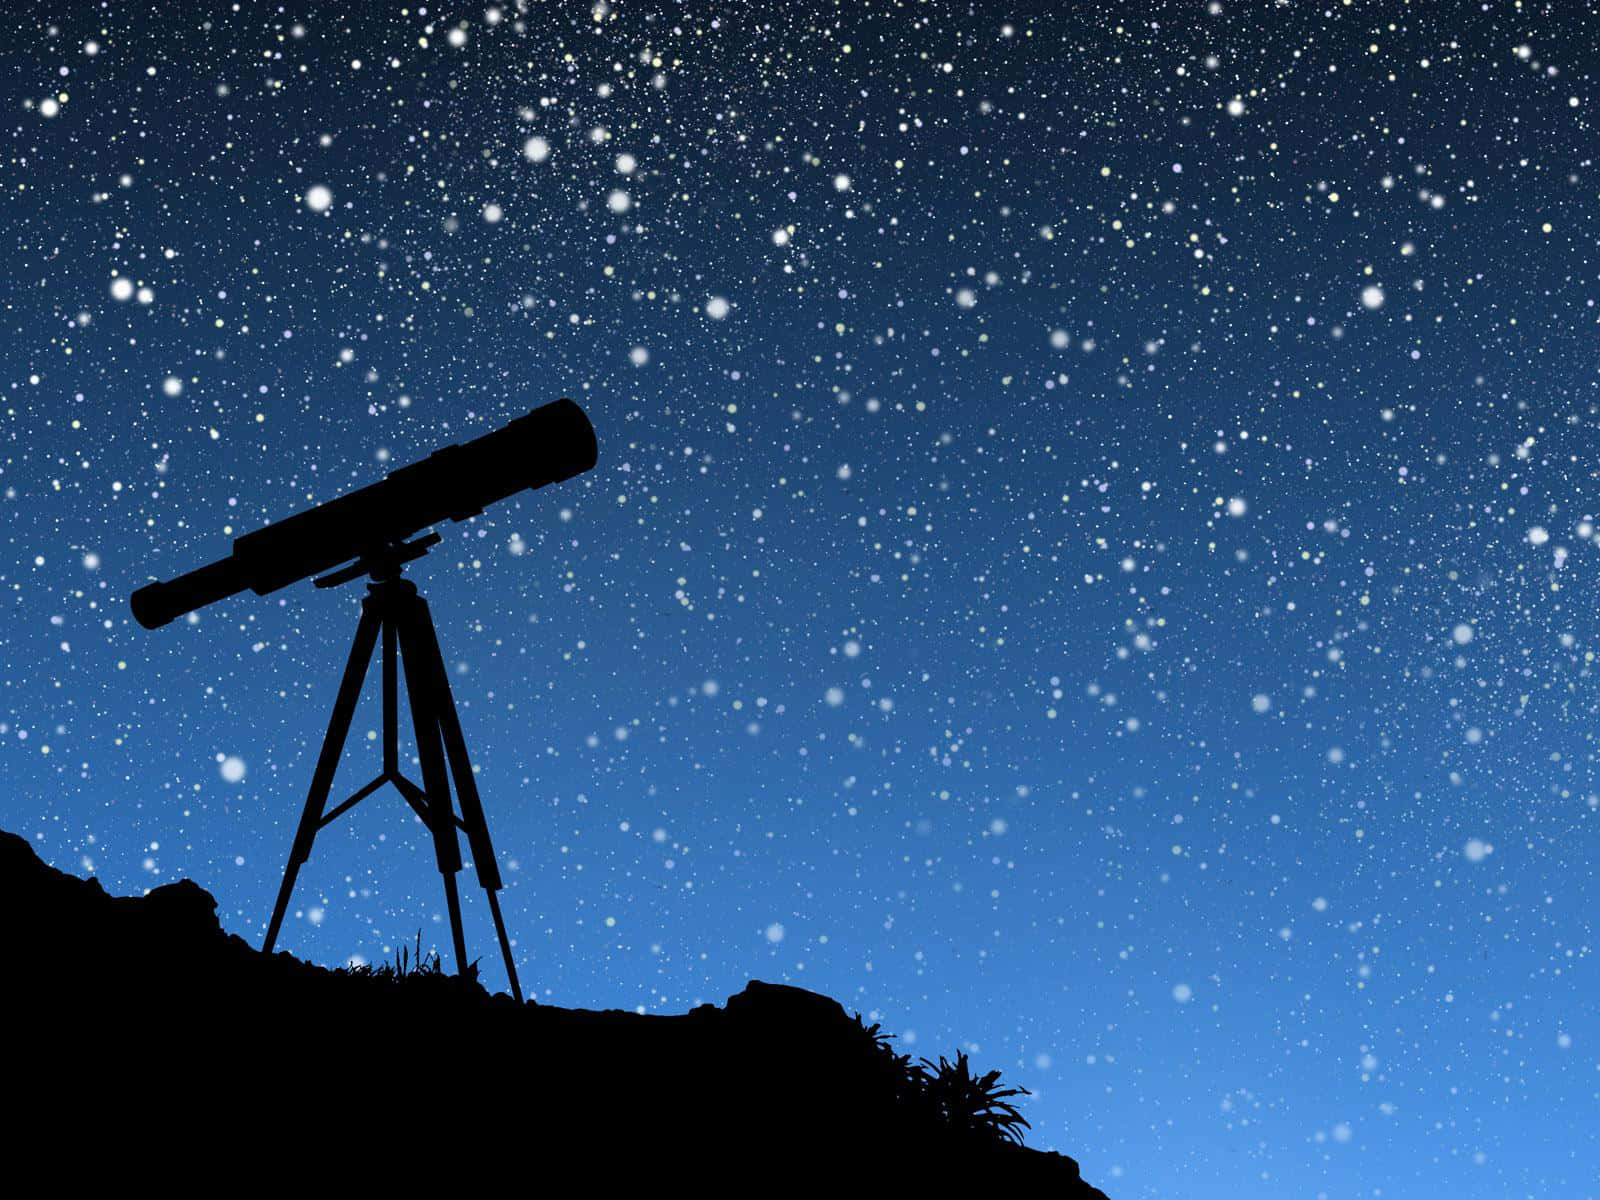 Bruge et teleskop til at se på himmelske objekter.